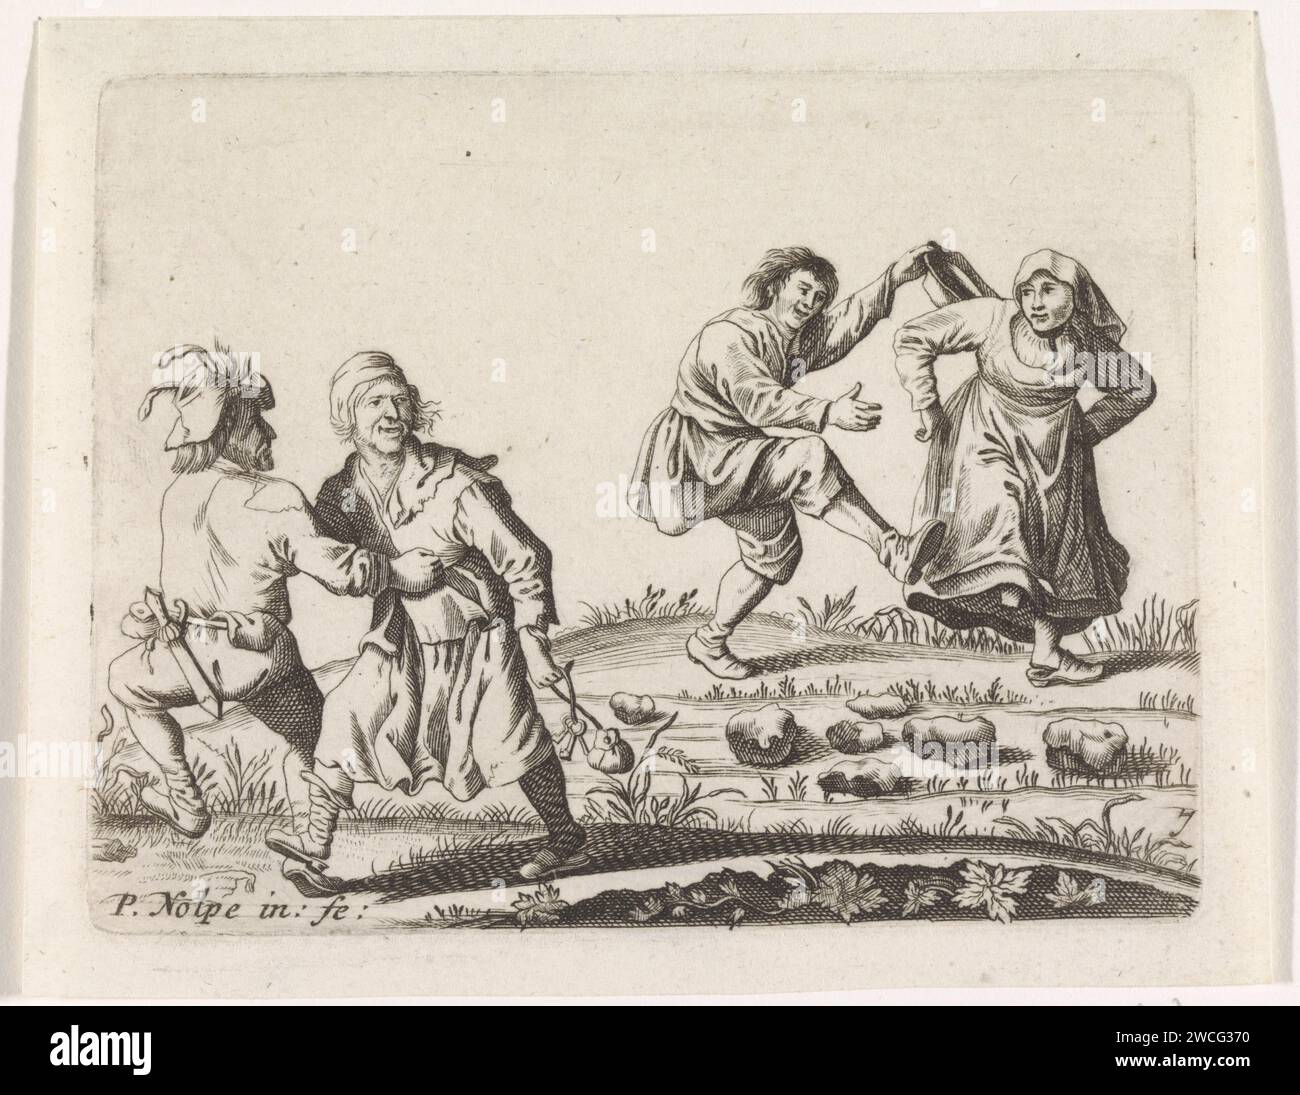 Zwei tanzende Boerenparten, Anonym, nach Pieter Nolpe, nach Pieter Jansz Quast, 1623–1703 drucken zwei Bauernpaare tanzen unter freiem Himmel. Papiergravurbauern. Mehr als ein Paar tanzt Stockfoto